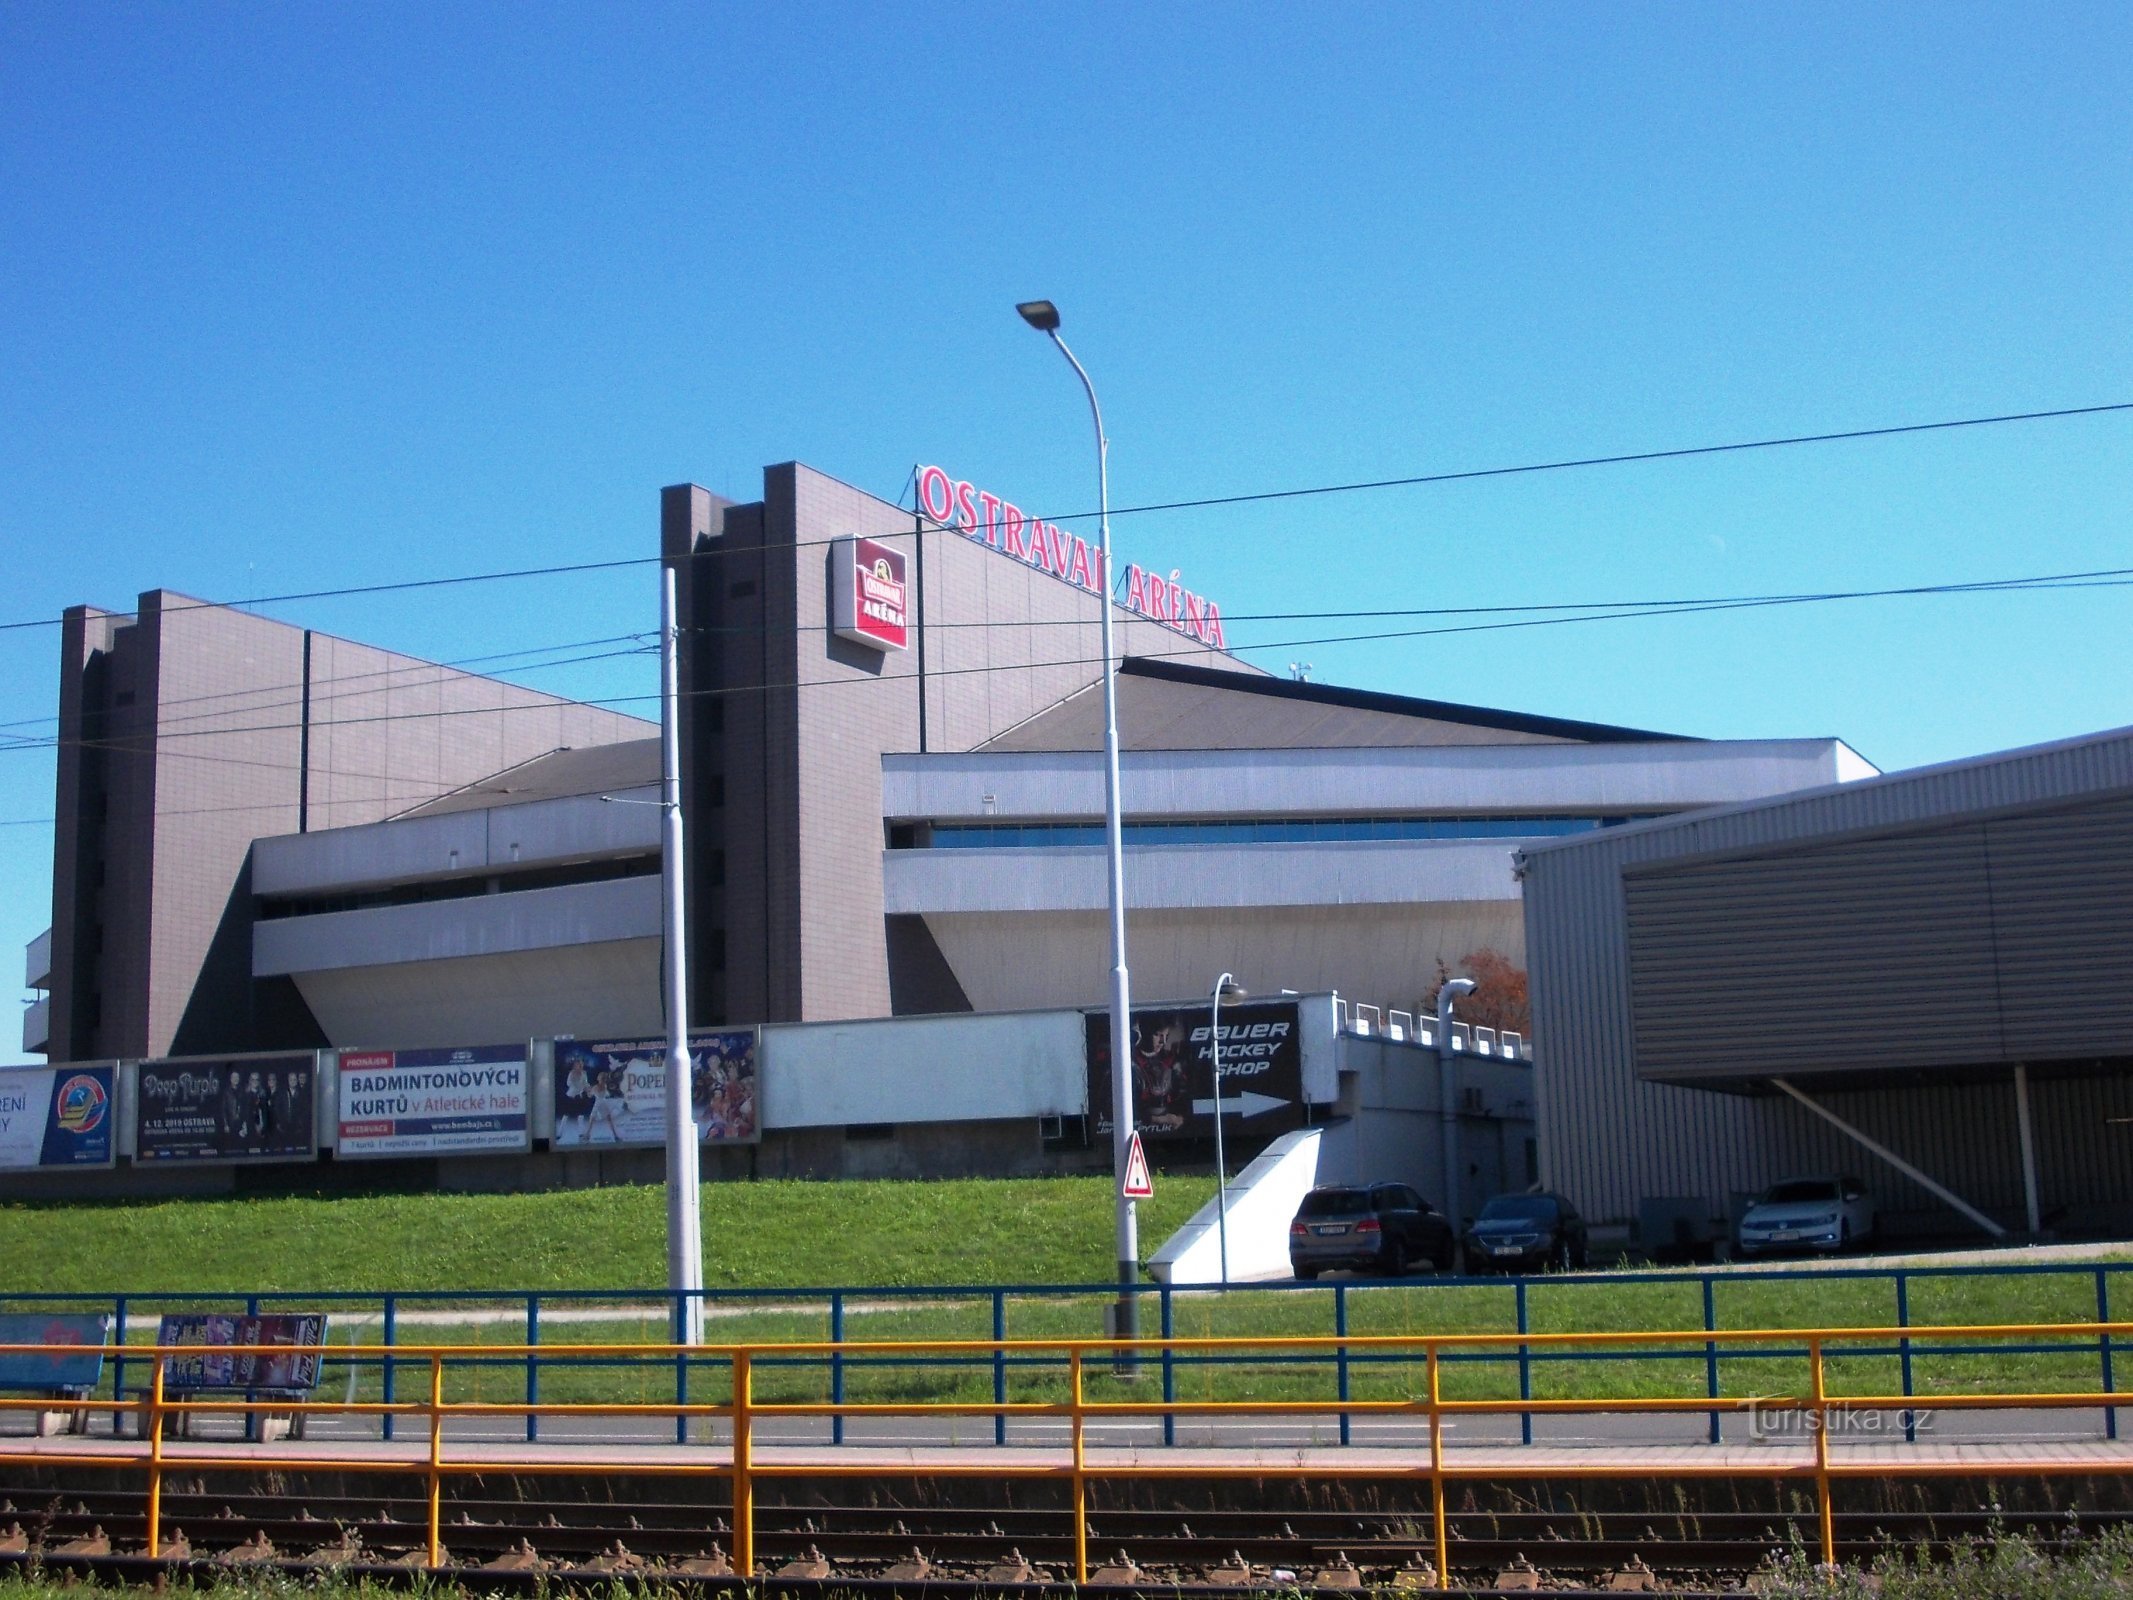 Ostravar Arena - de ceremoniële opening vond plaats in 1986